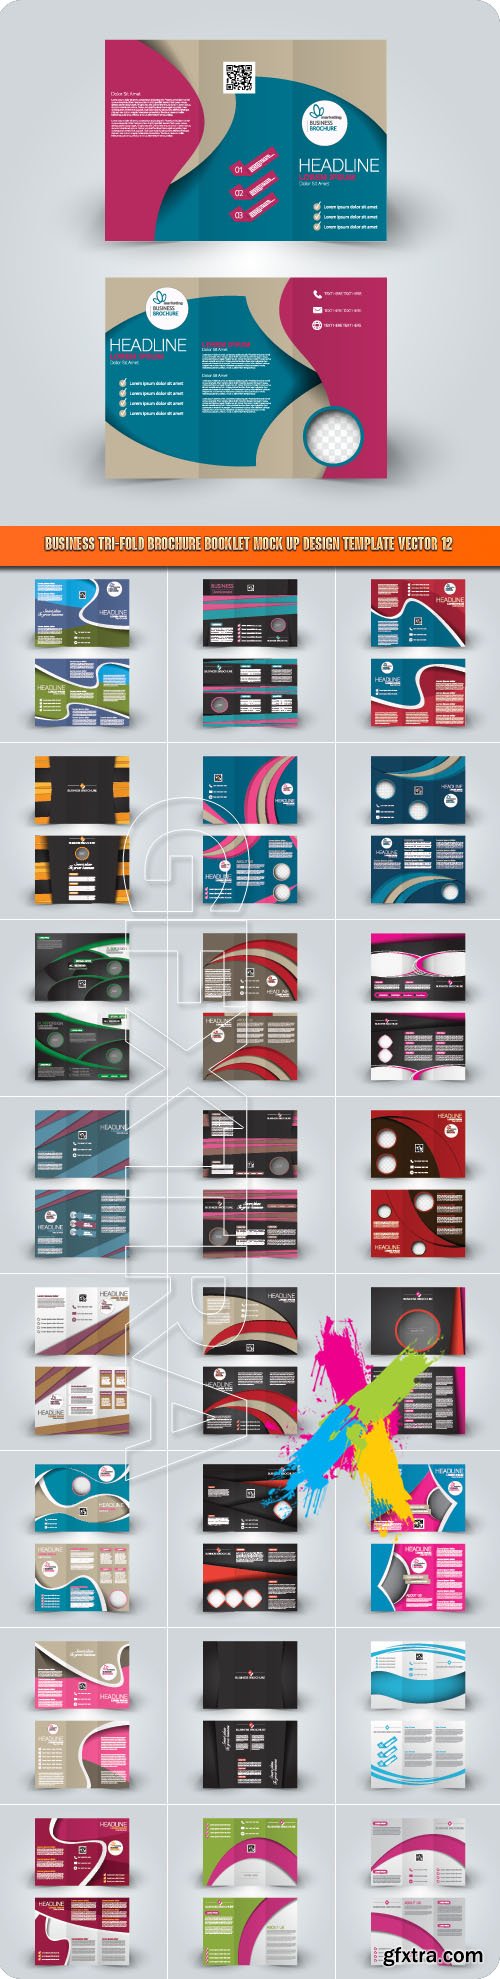 Business tri-fold brochure booklet mock up design template vector 12